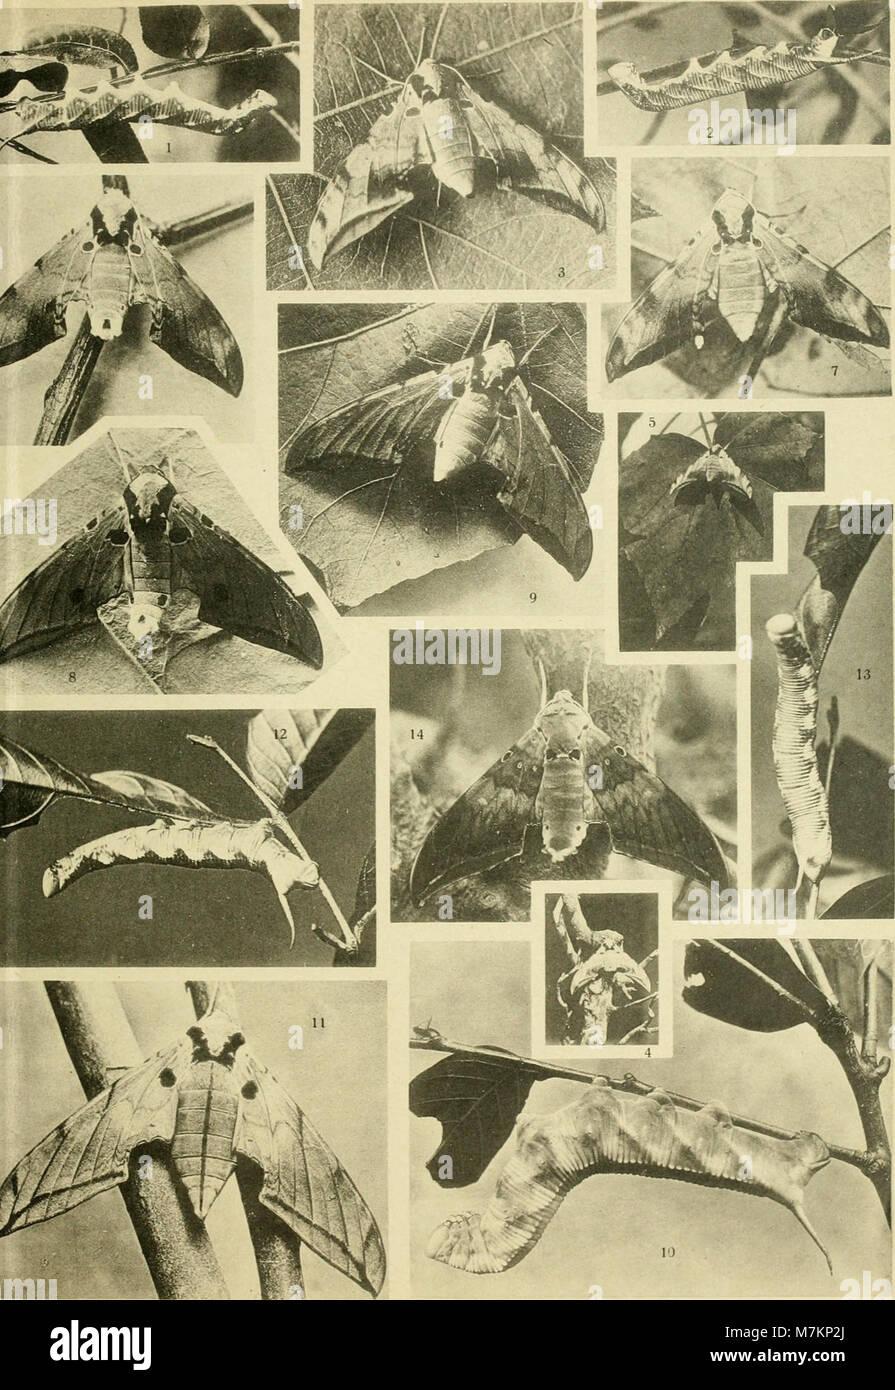 Biologie und systematik der südschinesischen sphingiden, zugleich ein Versuch einer biologie tropischer lepidopteren überhaupt (1922) (20372344332) Foto Stock